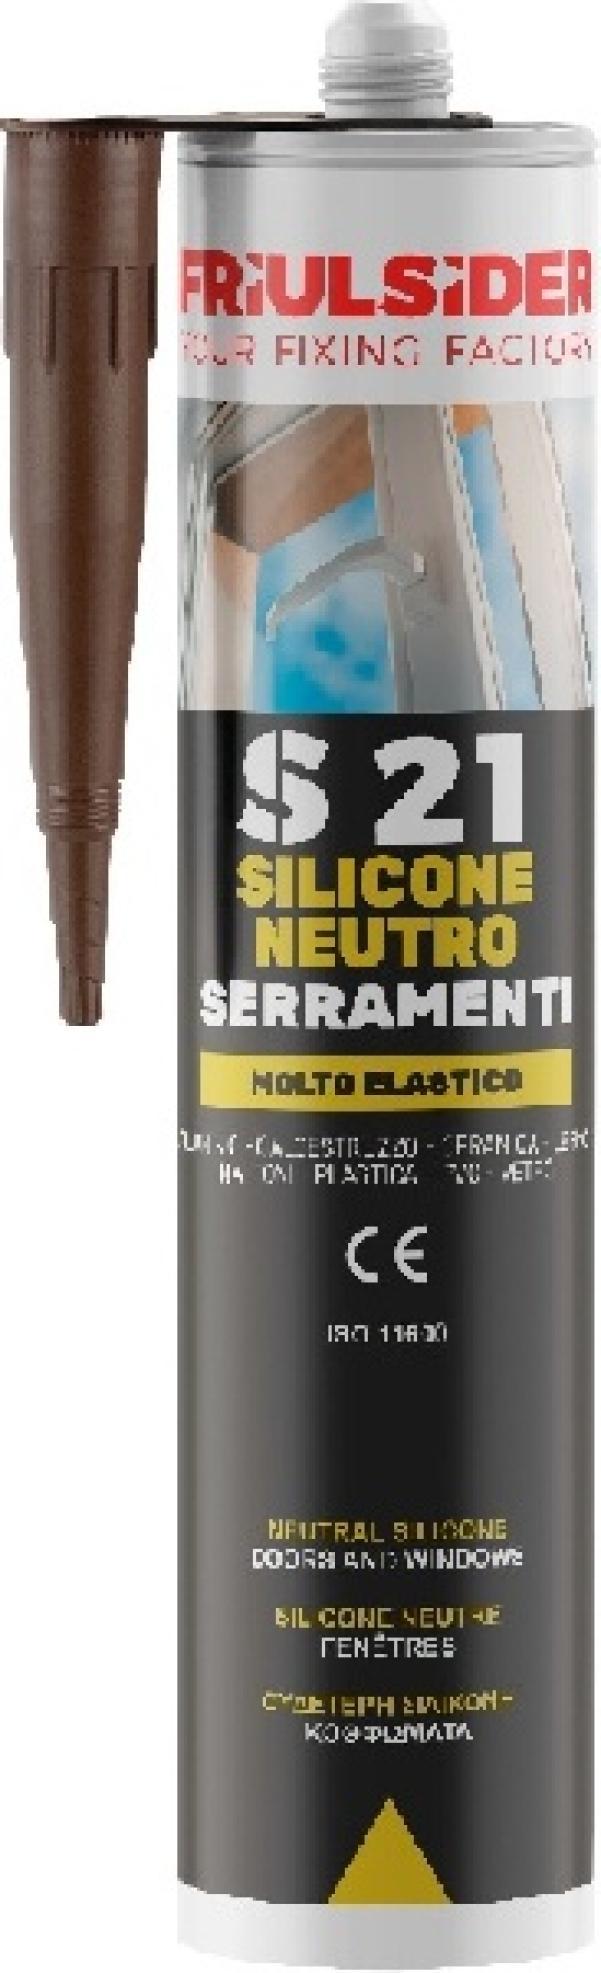 Silicone neutro serramenti grigio ral7004 310 ml Friulsider S2103